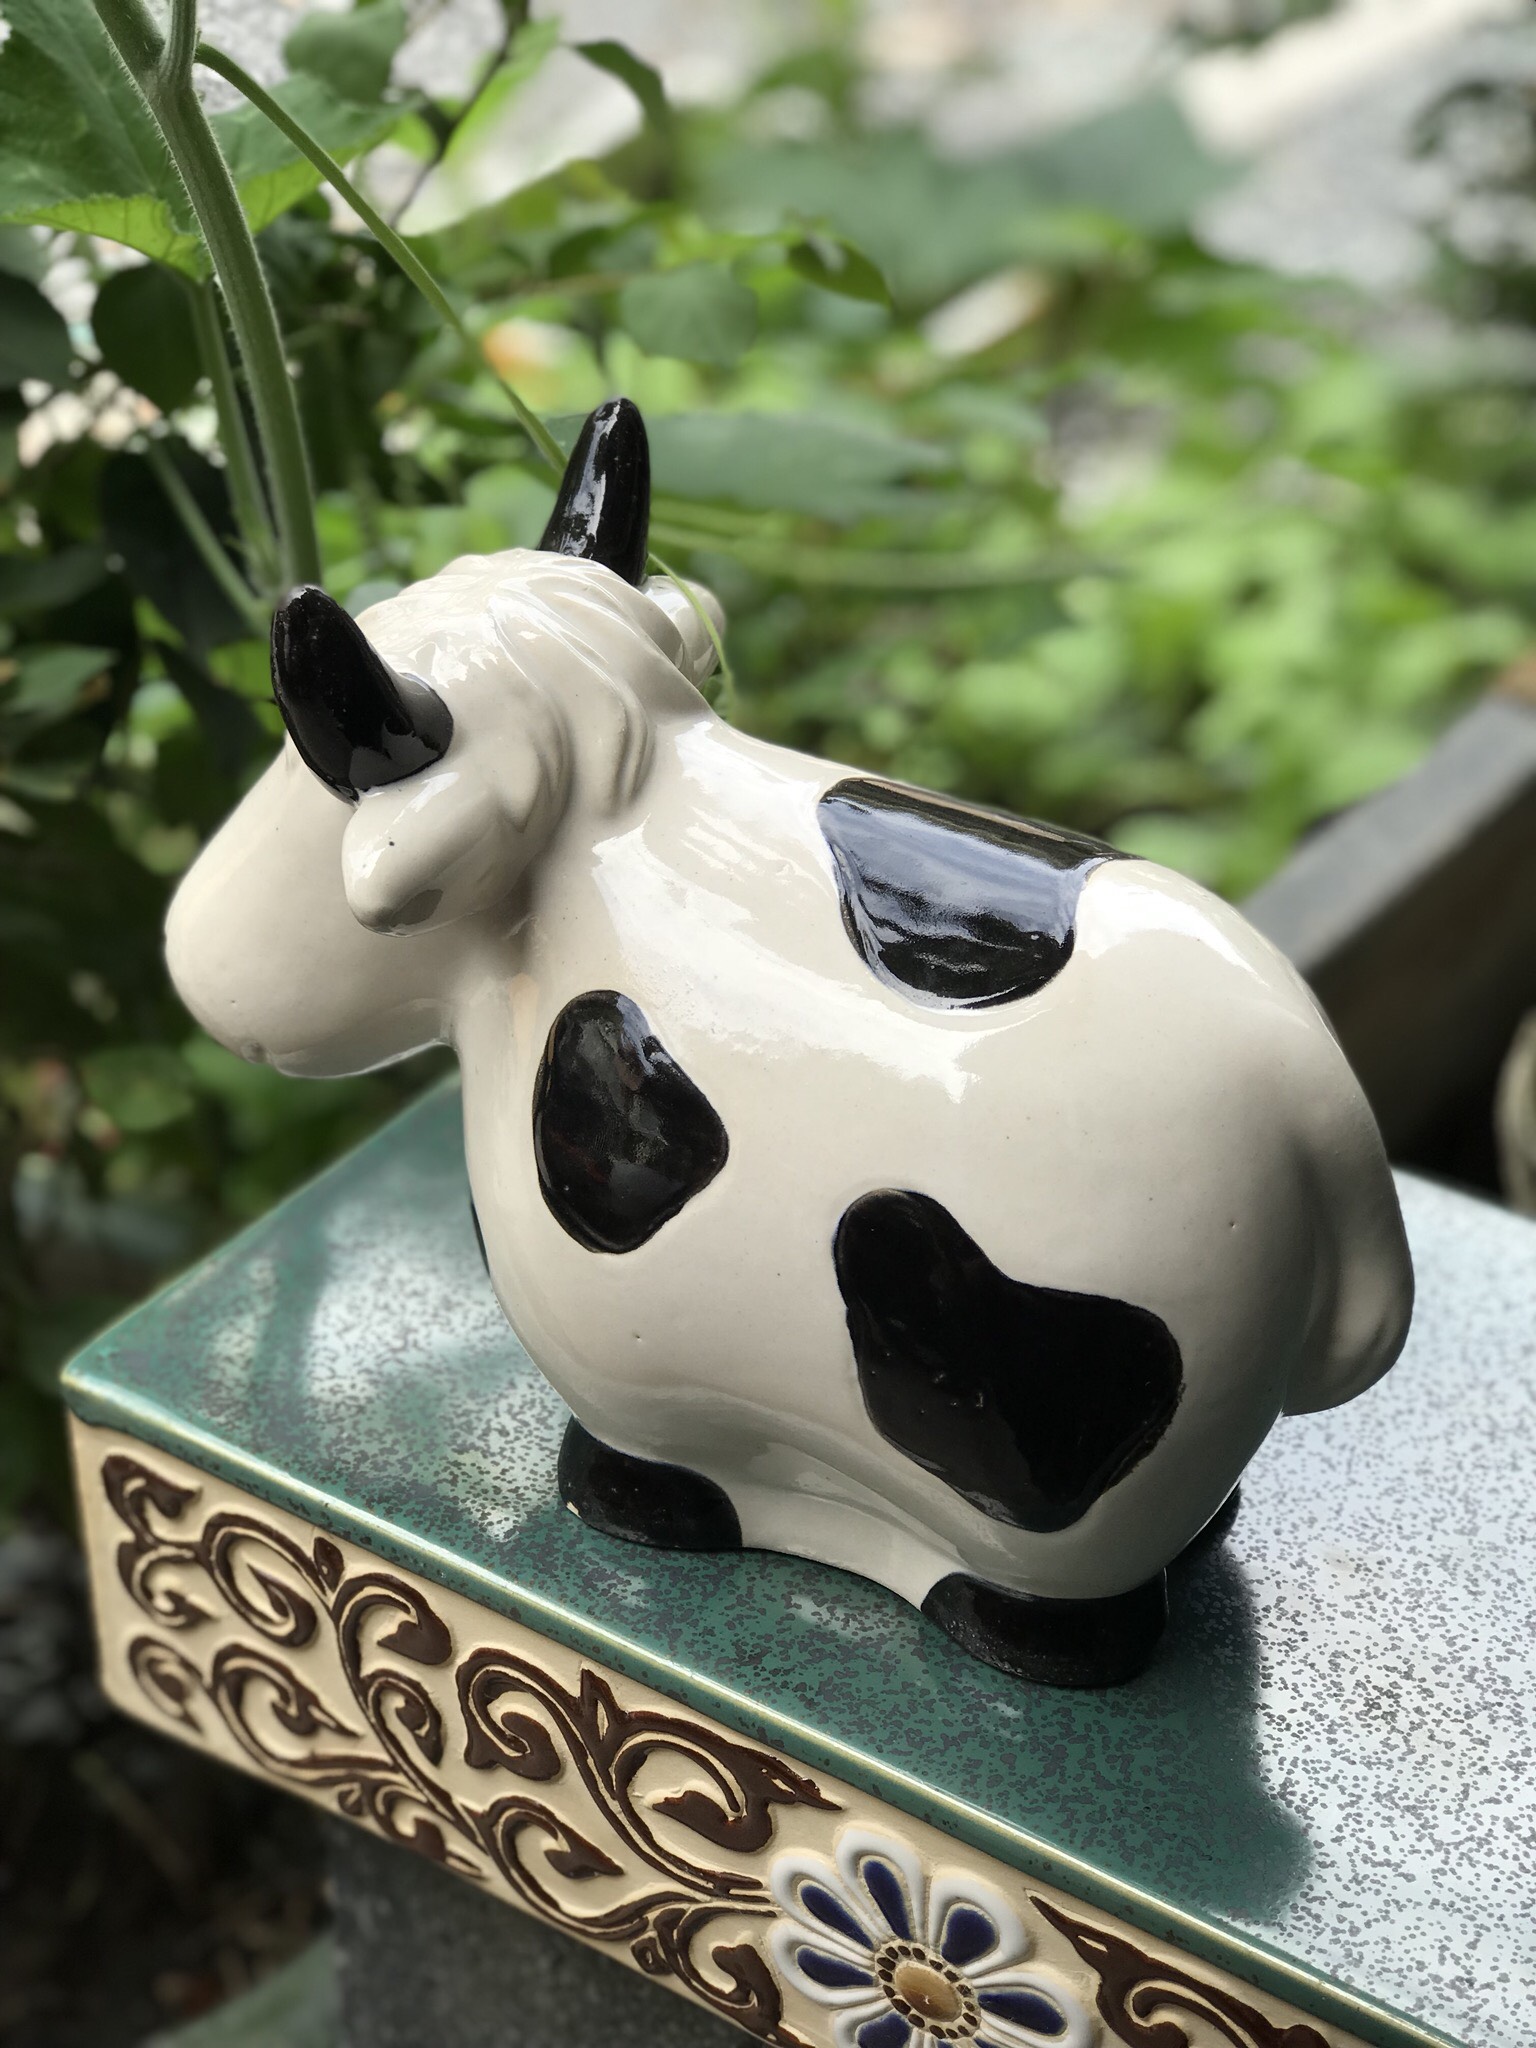 Bò sữa gốm sứ trang trí trong nhà hoặc ngoài sân vườn